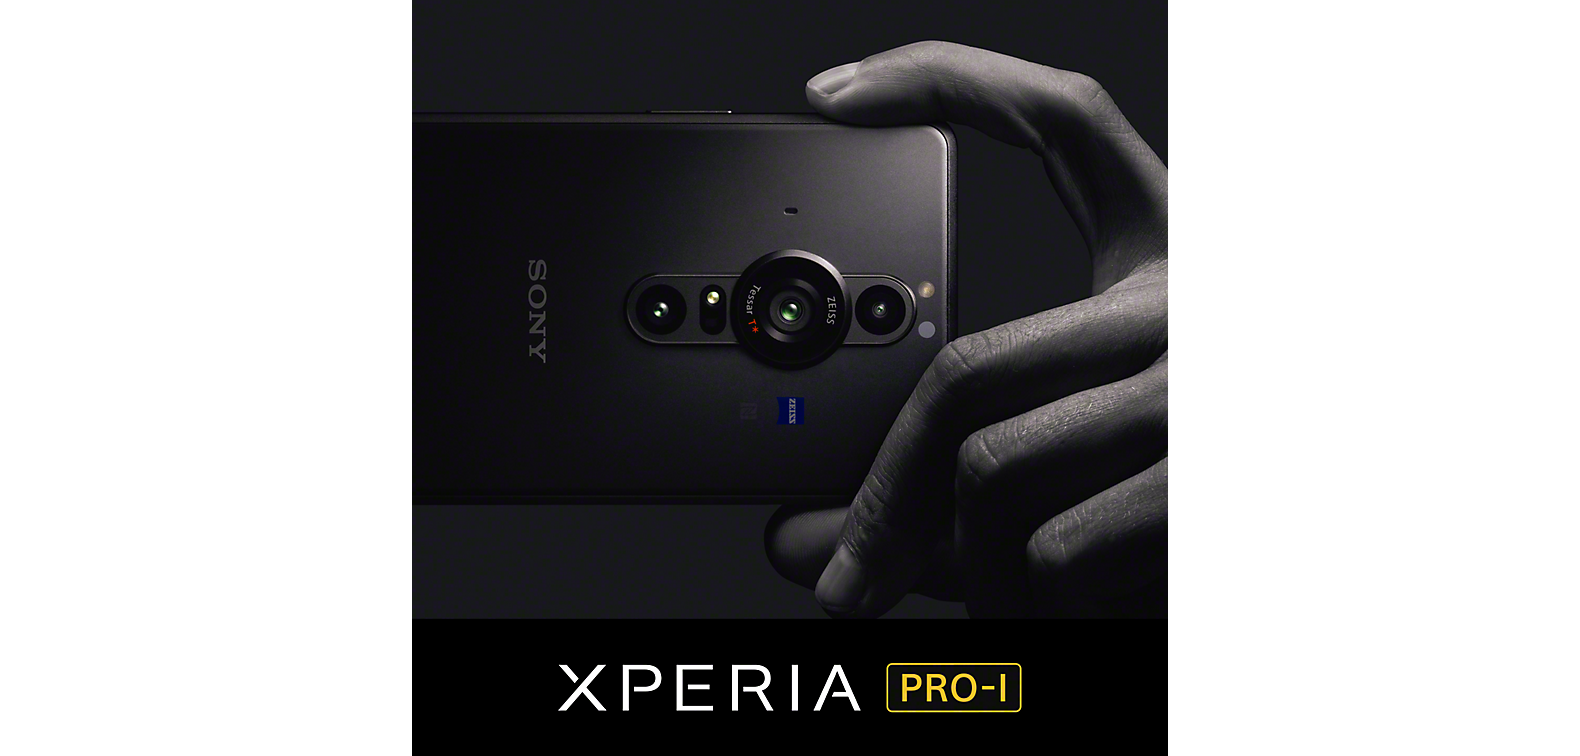 Main tenant un smartphone Xperia PRO-I noir au-dessus du logo du Xperia PRO-I.